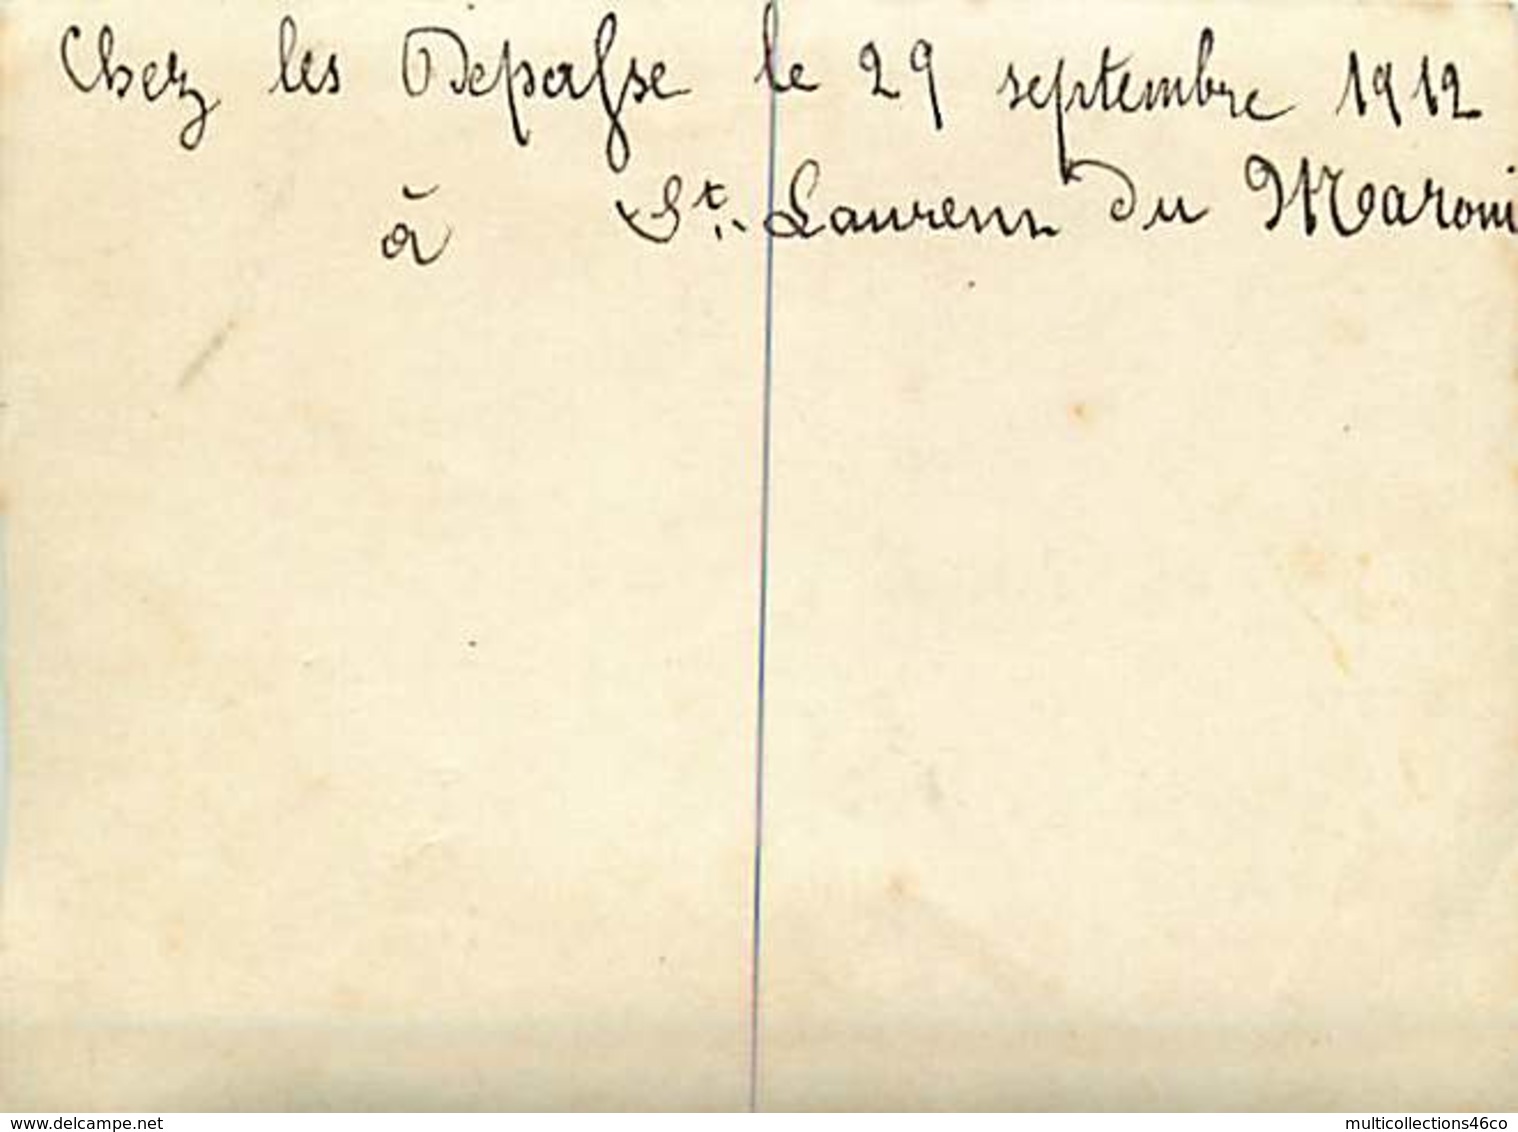 160320A - 97 GUYANE SAINT LAURENT DU MARONI - PHOTO 1912 Repas Intérieur De Maison - Saint Laurent Du Maroni